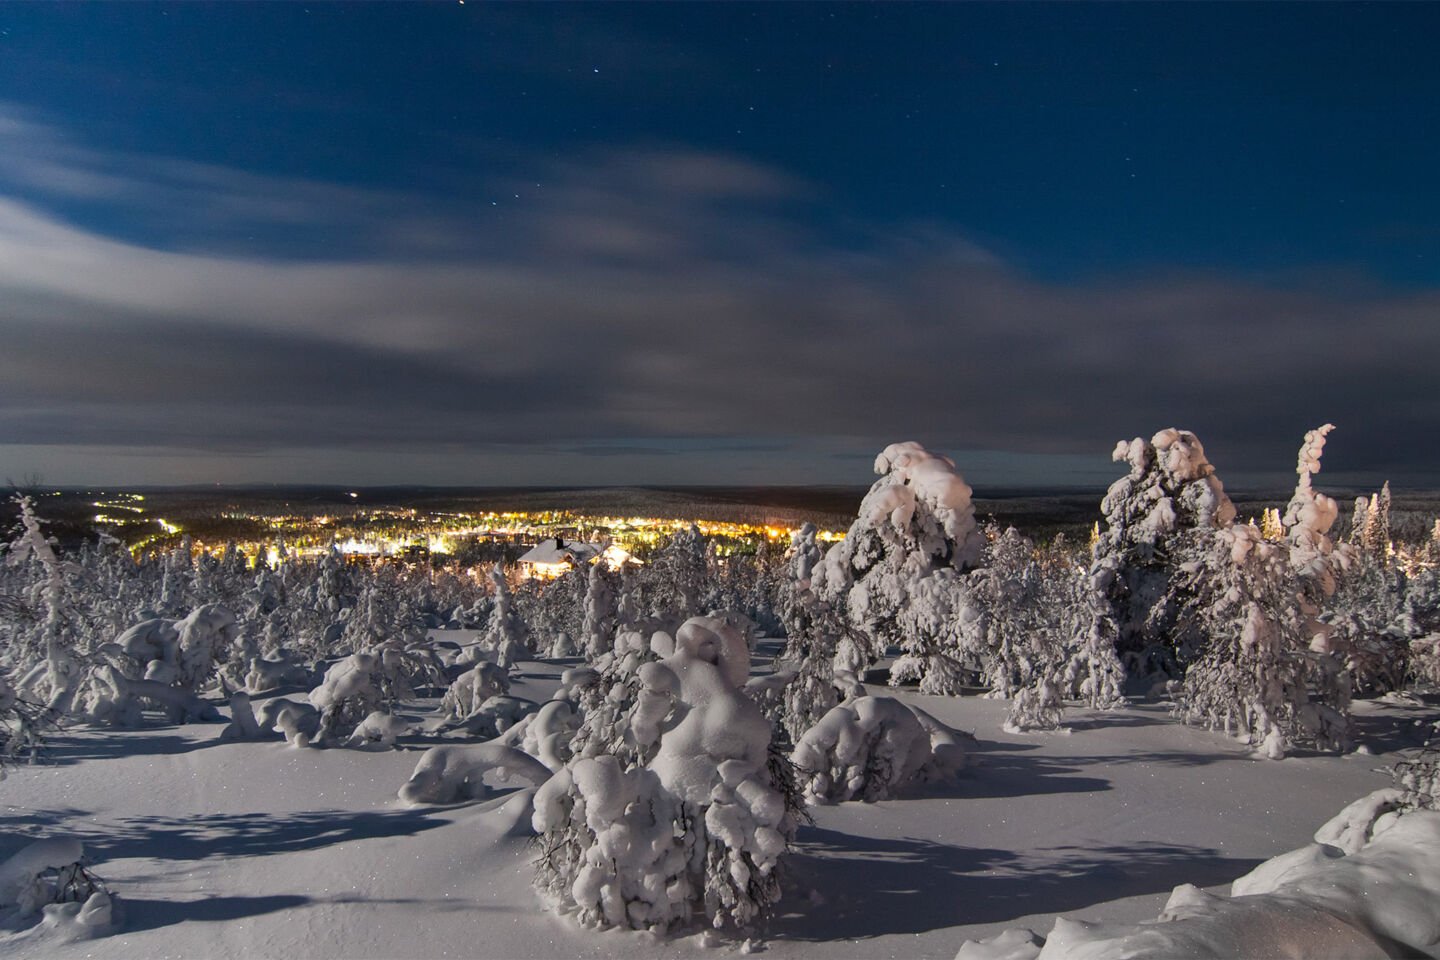 The lights of Saariselkä in Inari, Finland in winter